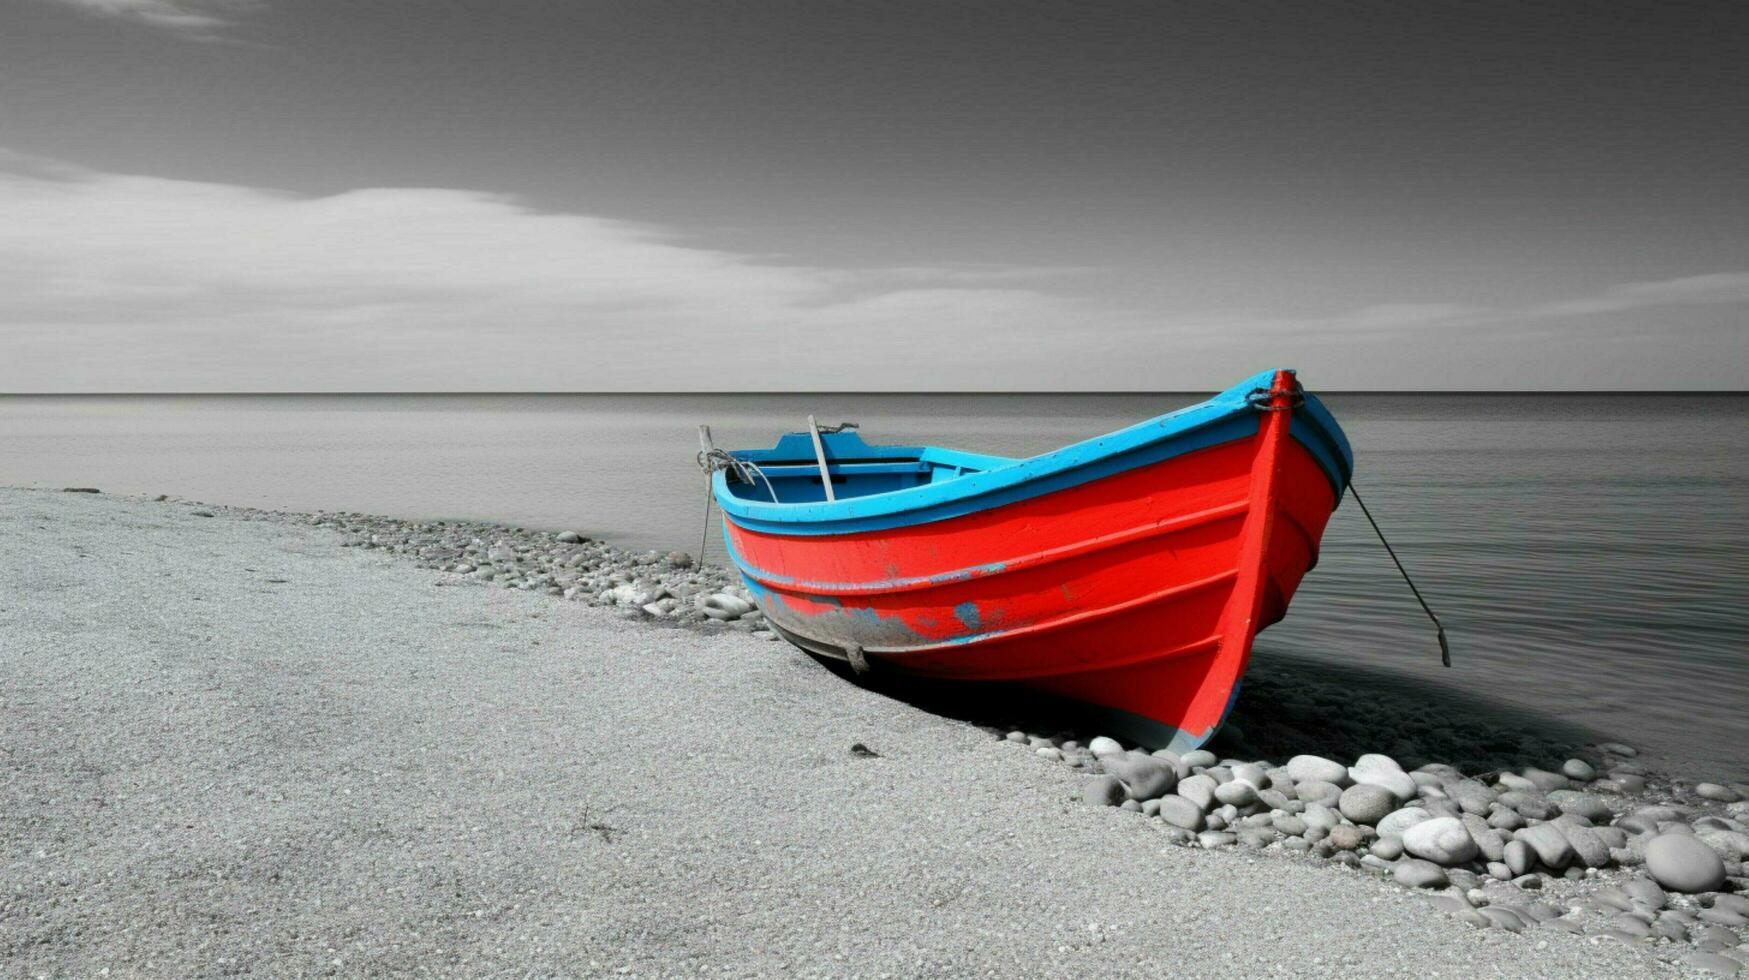 blanc et noir paysage marin avec une coloré bateau mini photo